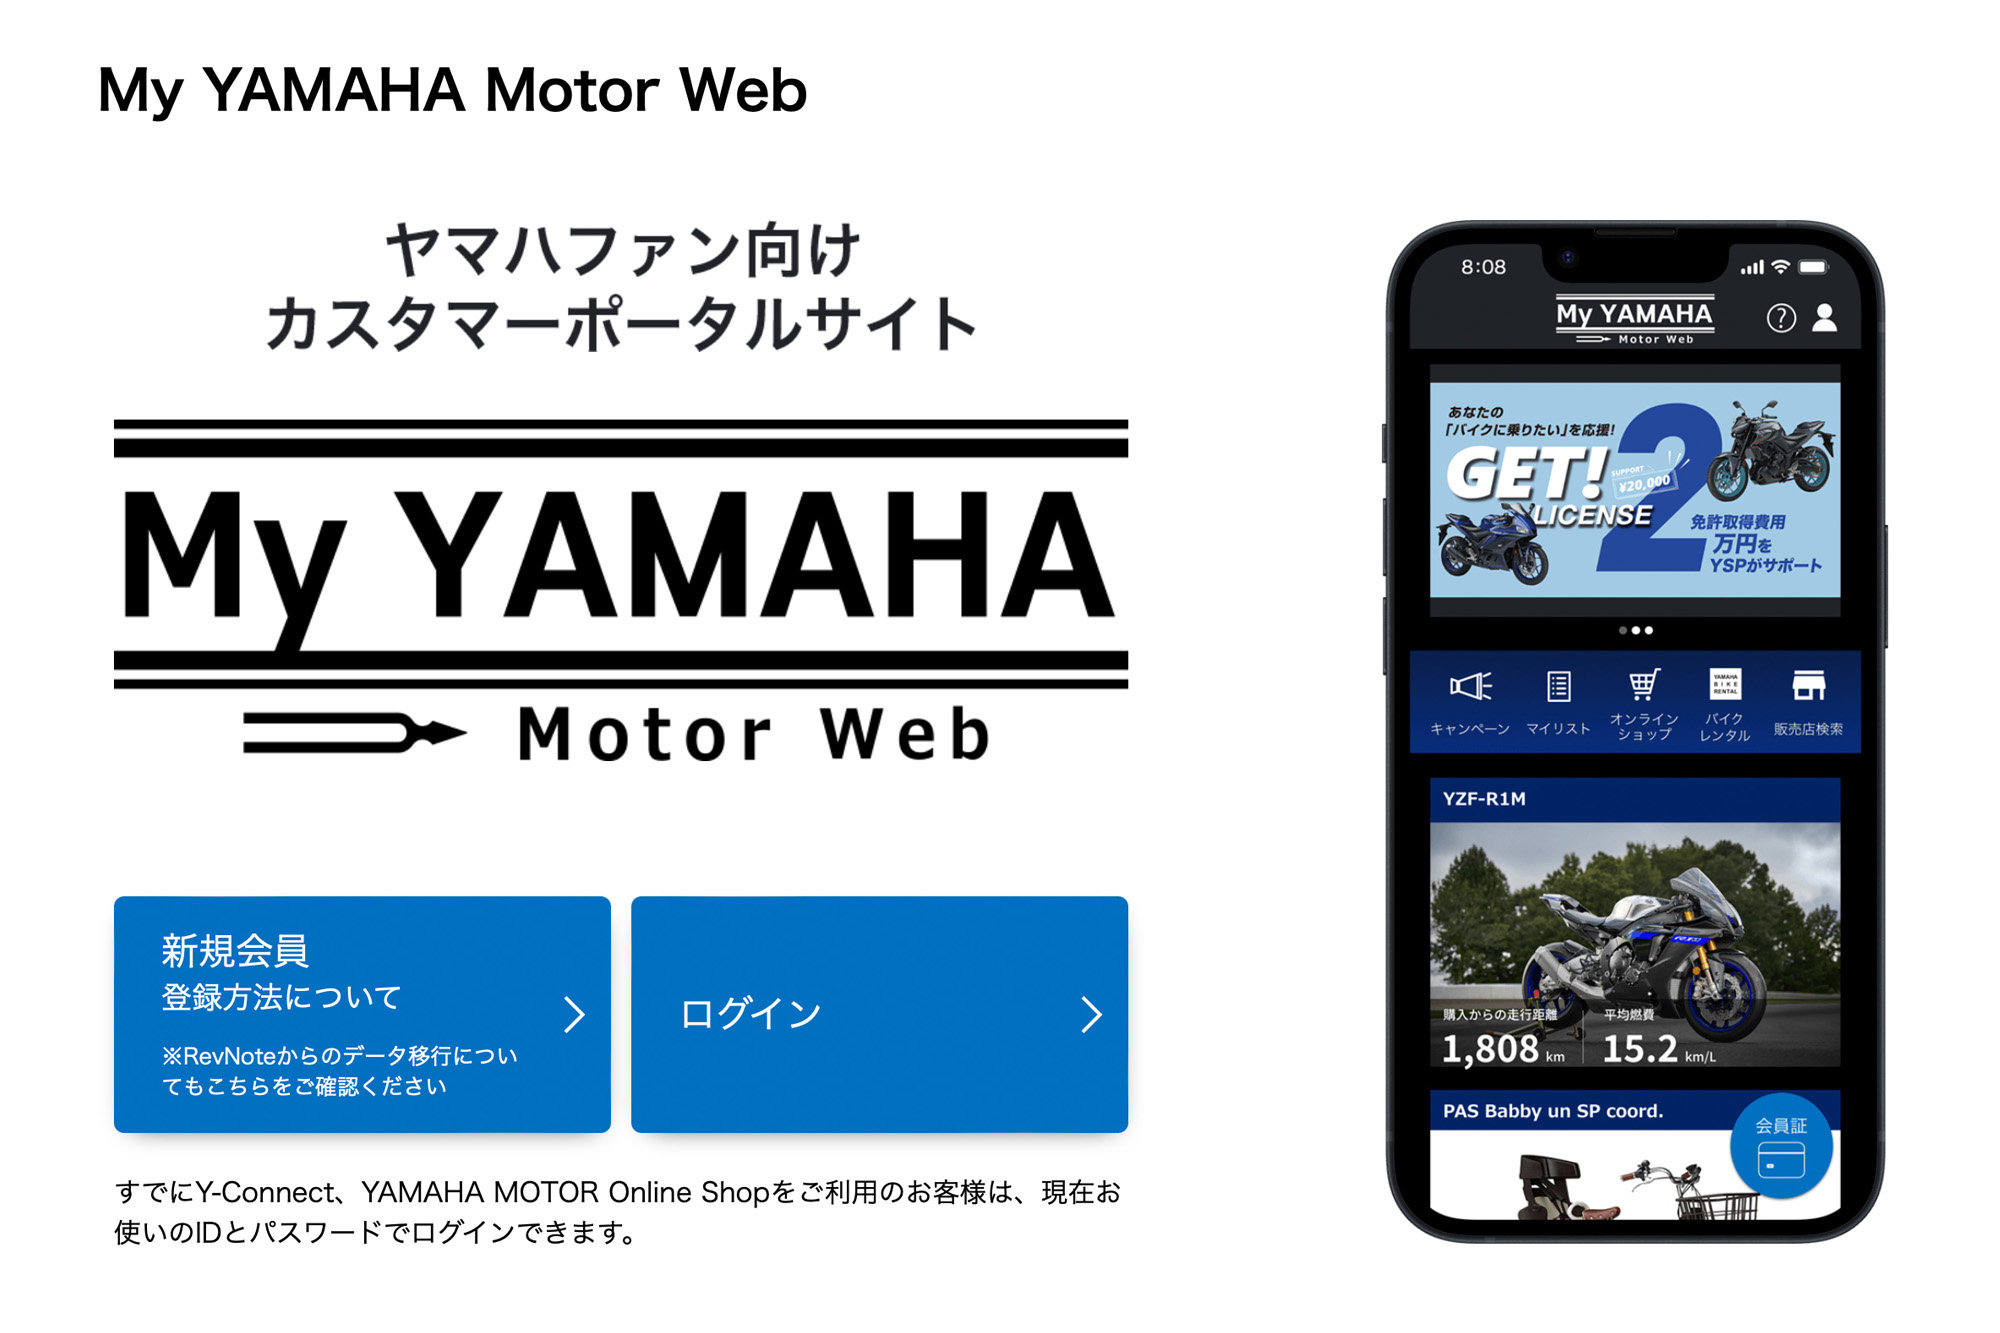 参加する場合は「My YAMAHA Motor Web」https://www.yamaha-motor.co.jp/mc/myyamaha/からの事前エントリーがおすすめ。